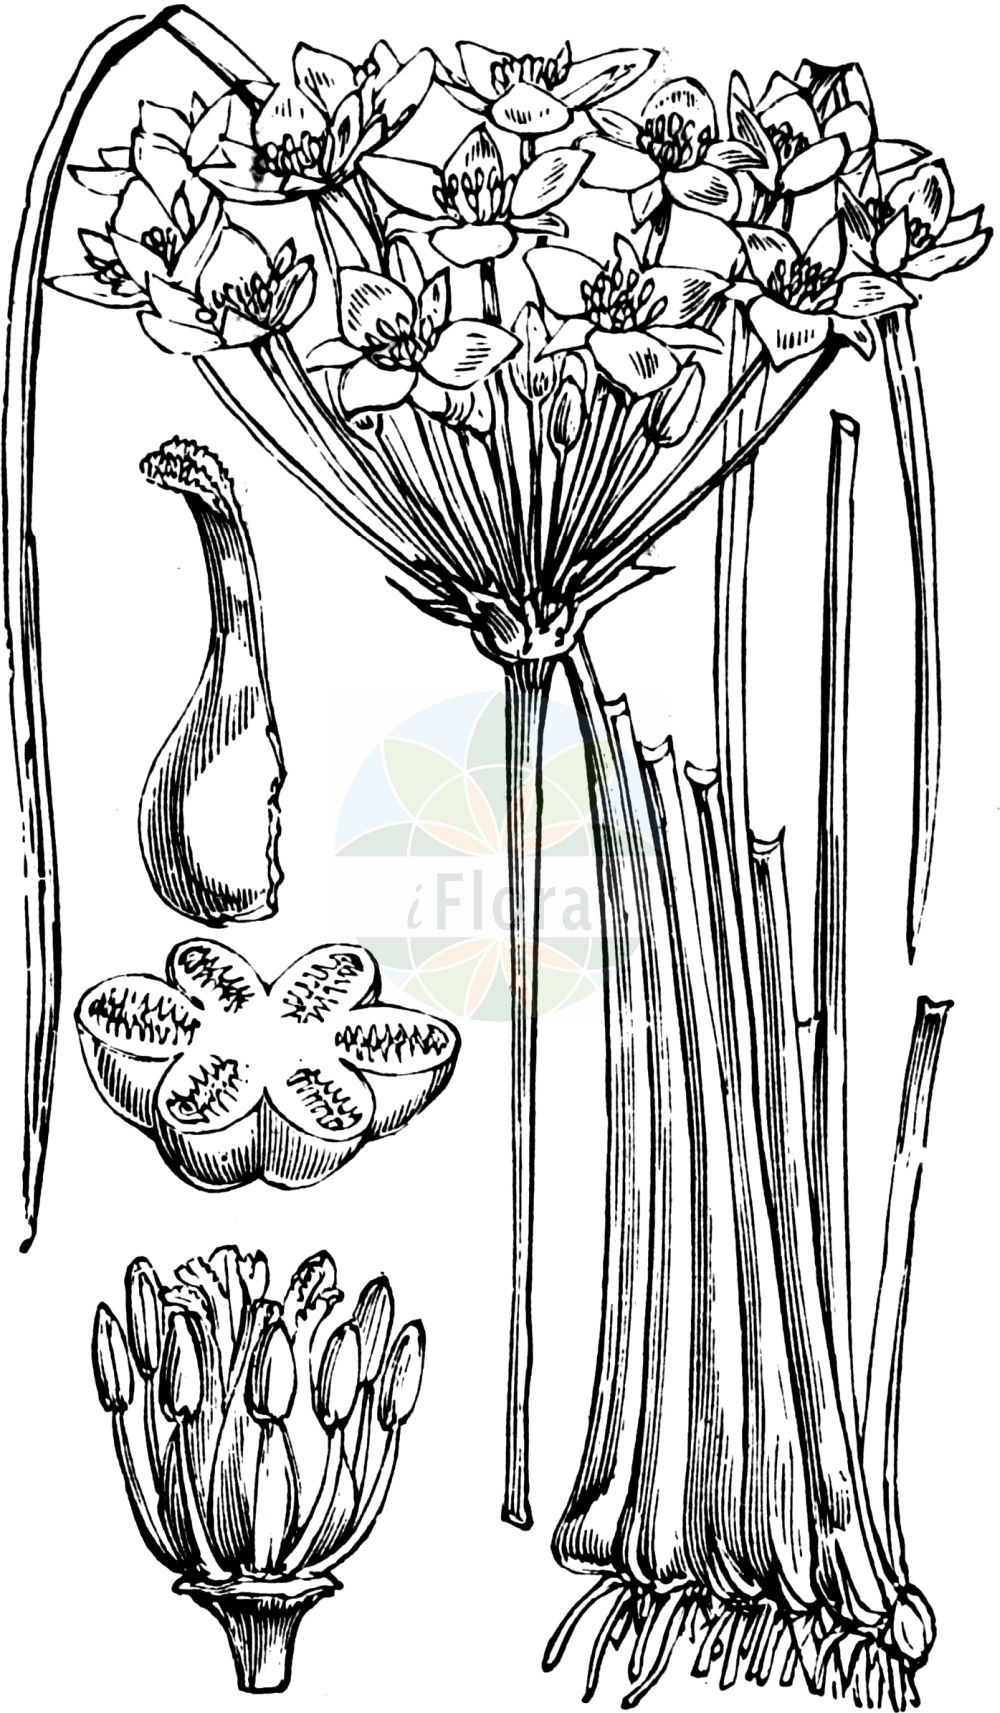 Historische Abbildung von Butomus umbellatus (Schwanenblume - Flowering-rush). Das Bild zeigt Blatt, Bluete, Frucht und Same. ---- Historical Drawing of Butomus umbellatus (Schwanenblume - Flowering-rush). The image is showing leaf, flower, fruit and seed.(Butomus umbellatus,Schwanenblume,Flowering-rush,Butomus umbellatus,Schwanenblume,Wasserliesch,Wasserviole,Flowering-rush,Butomus,Schwanenblume,Flowering Rush,Butomaceae,Schwanenblumengewächse,Flowering-rush family,Blatt,Bluete,Frucht,Same,leaf,flower,fruit,seed,Fitch et al. (1880))